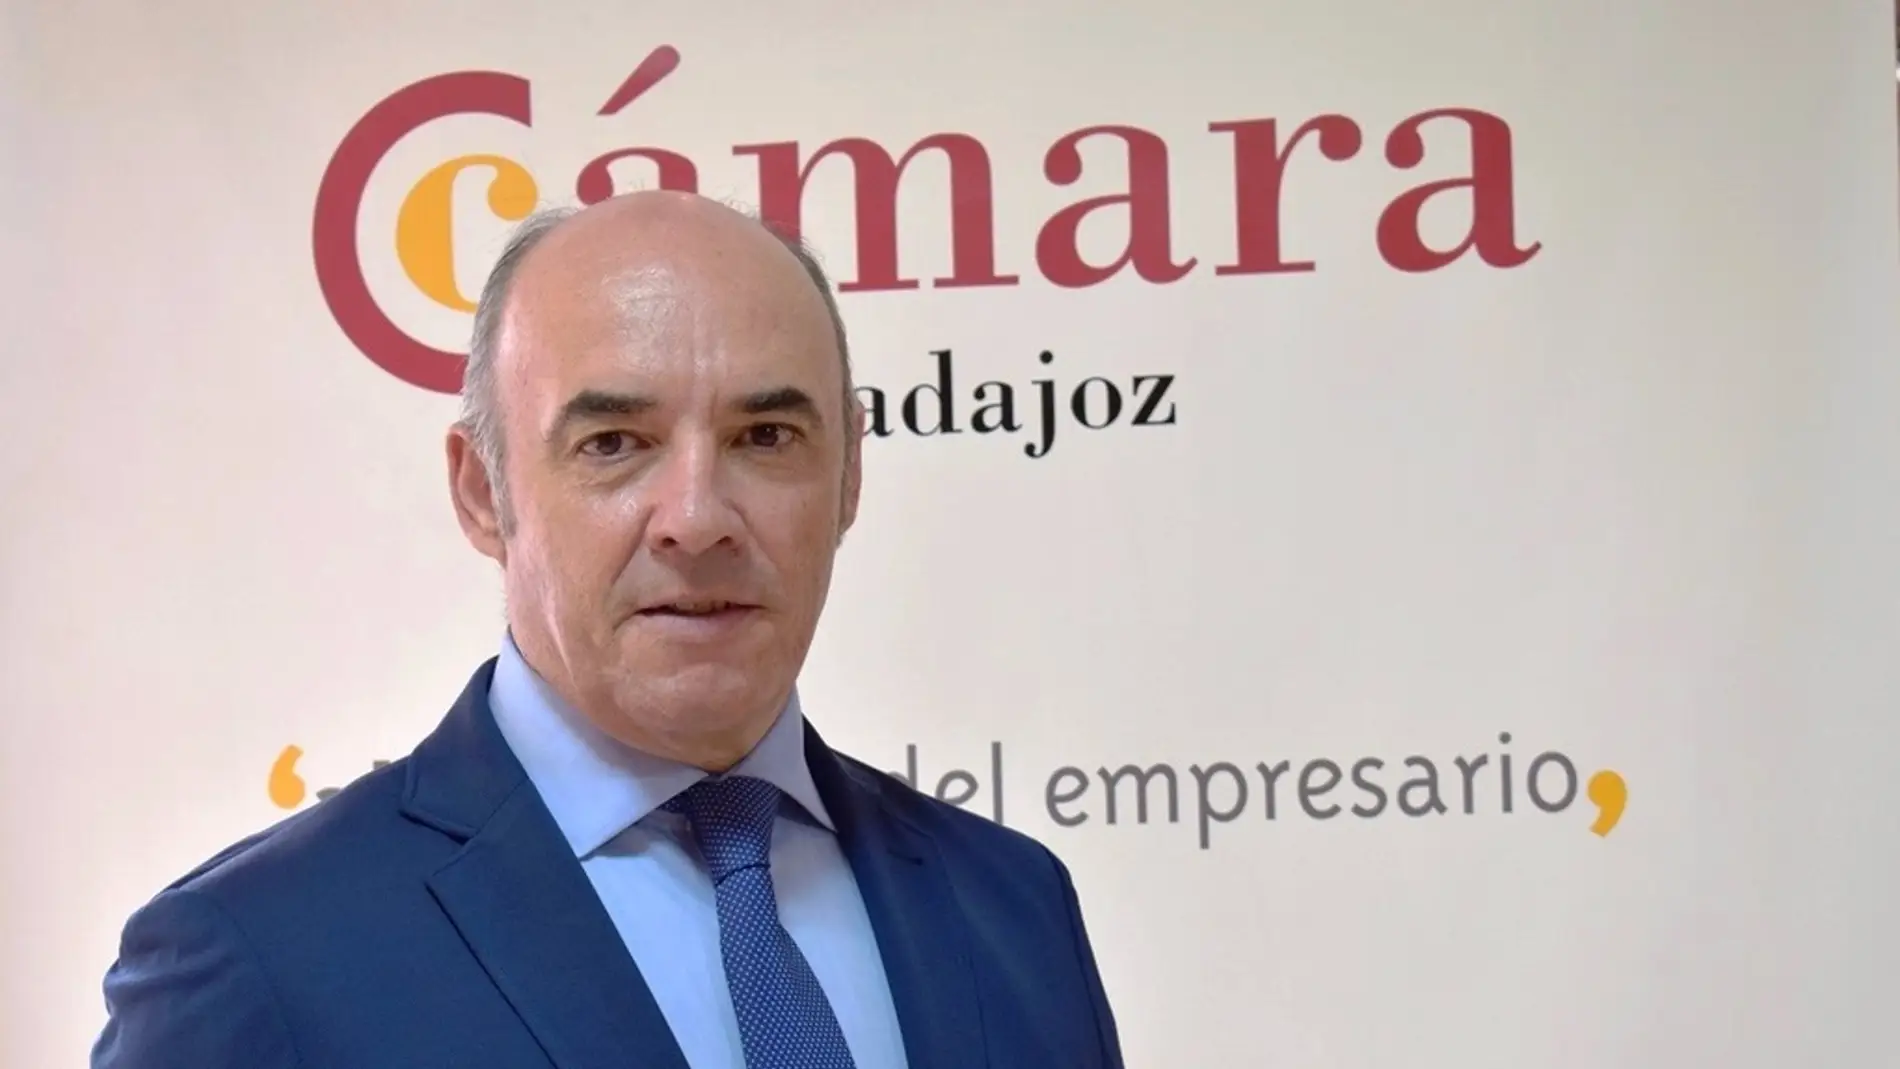 Candidatura Independiente de Empresarios y autónomos de Badajoz aboga por una Cámara de Comercio "transparente"